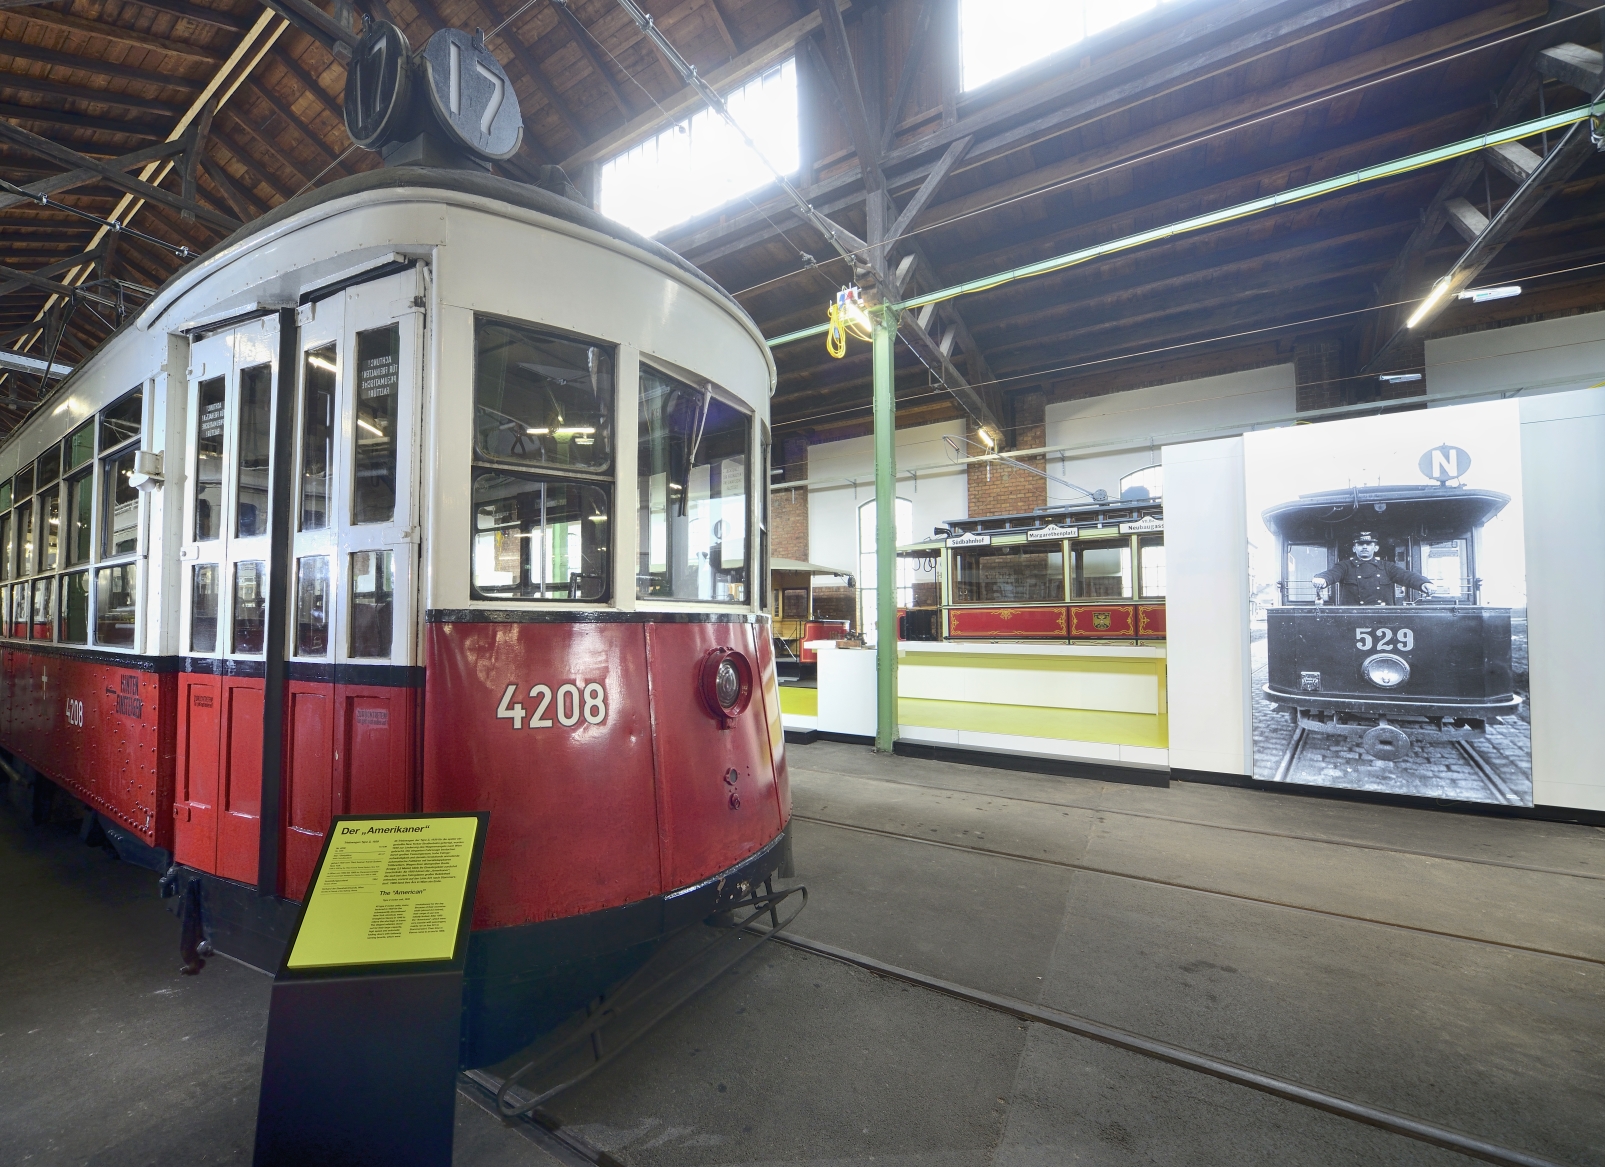 Die neue, interaktive Ausstellung in der Remise in Wien Erdberg ermöglicht den BesucherInnen einen Einblilck in 140 Jahre Verkehrsgeschichte der Stadt Wien.